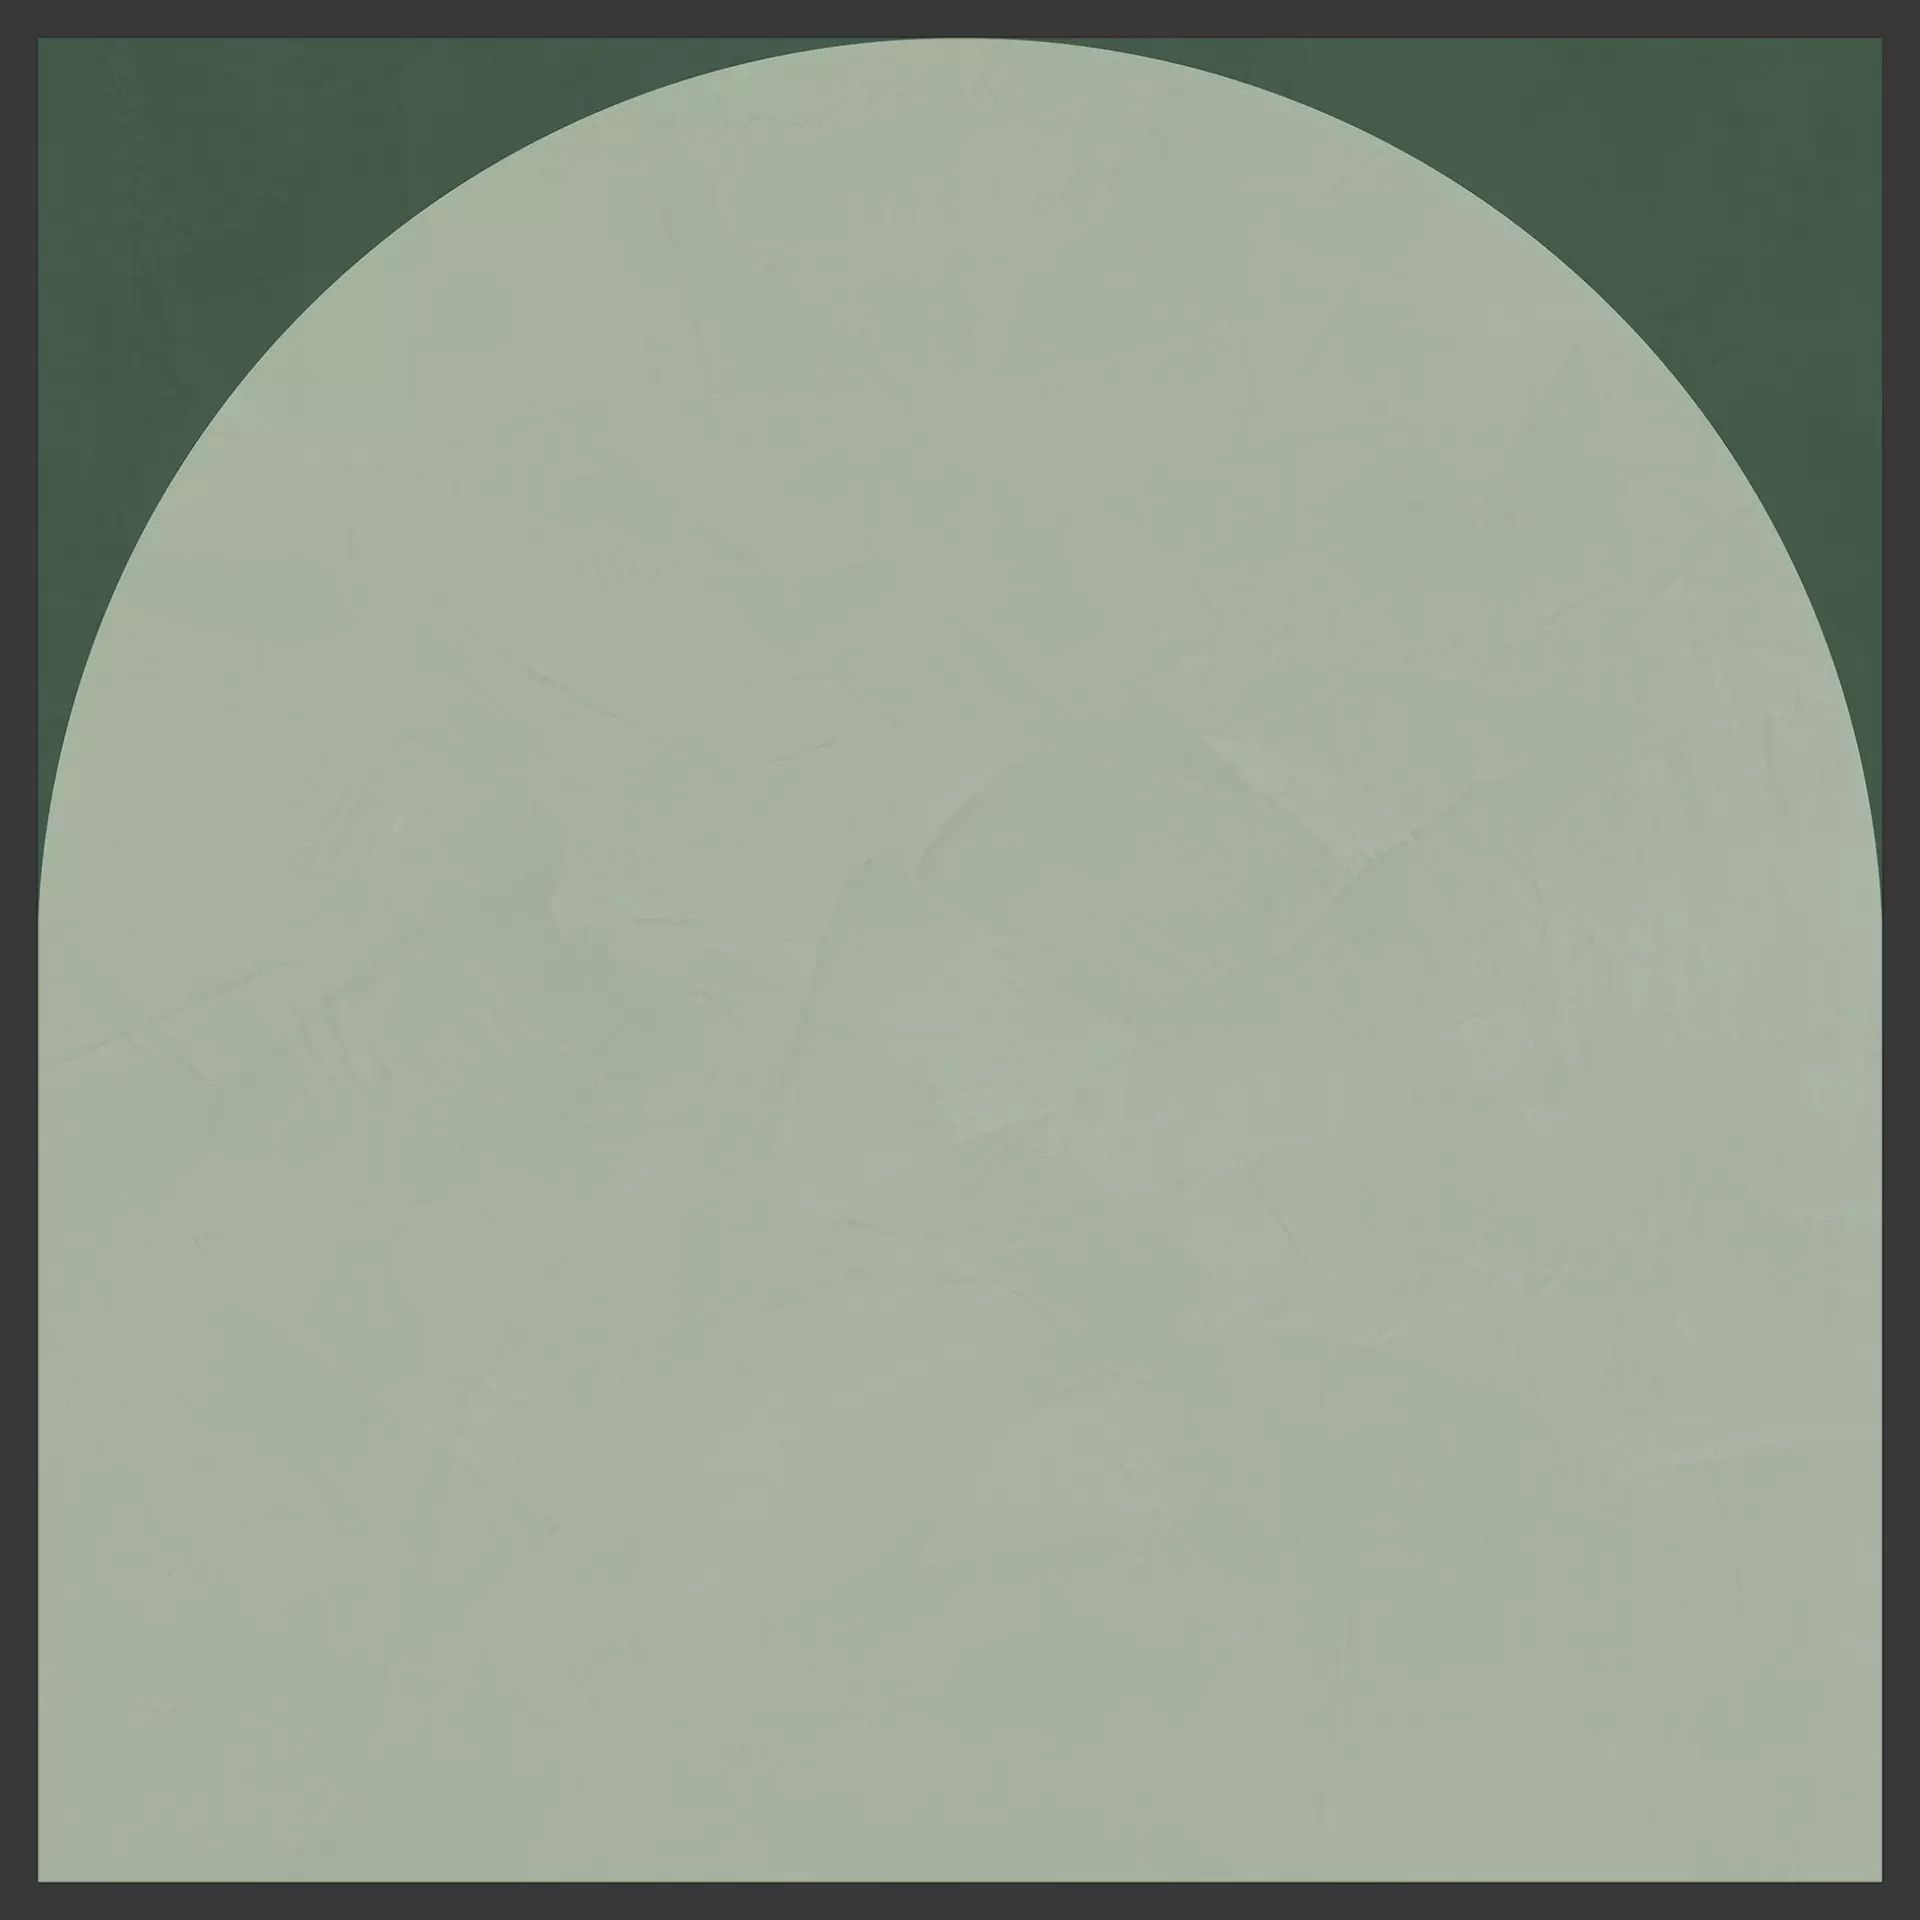 Cedit Policroma Lichene – Conifera Naturale – Matt Decor Arco 764120 120x120cm rectified 6mm